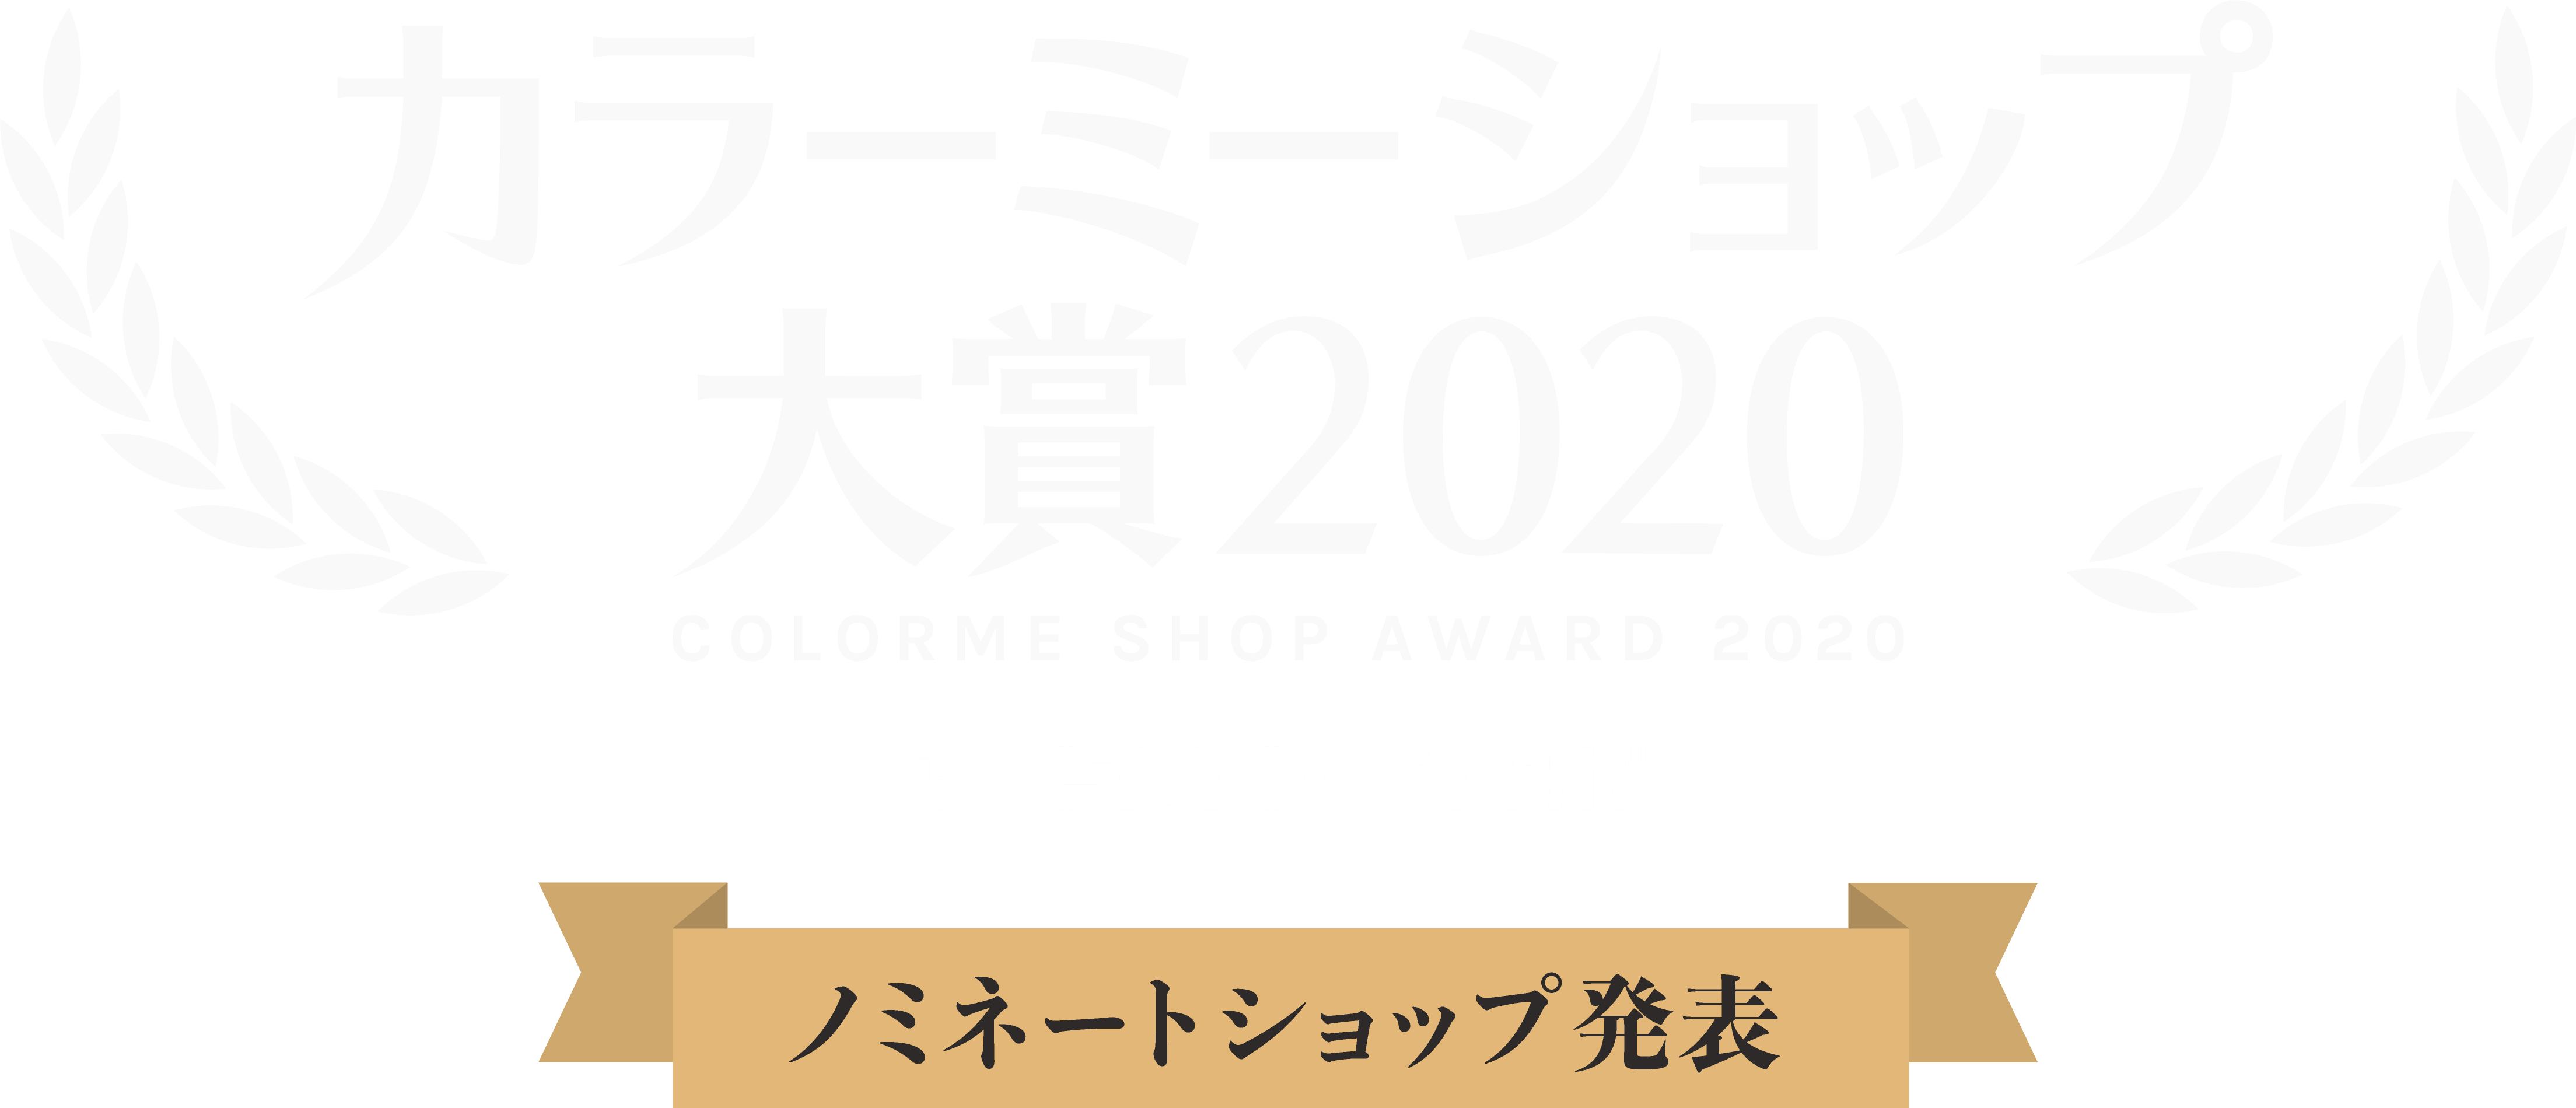 カラーミーショップ大賞2020-ノミネートショップ発表